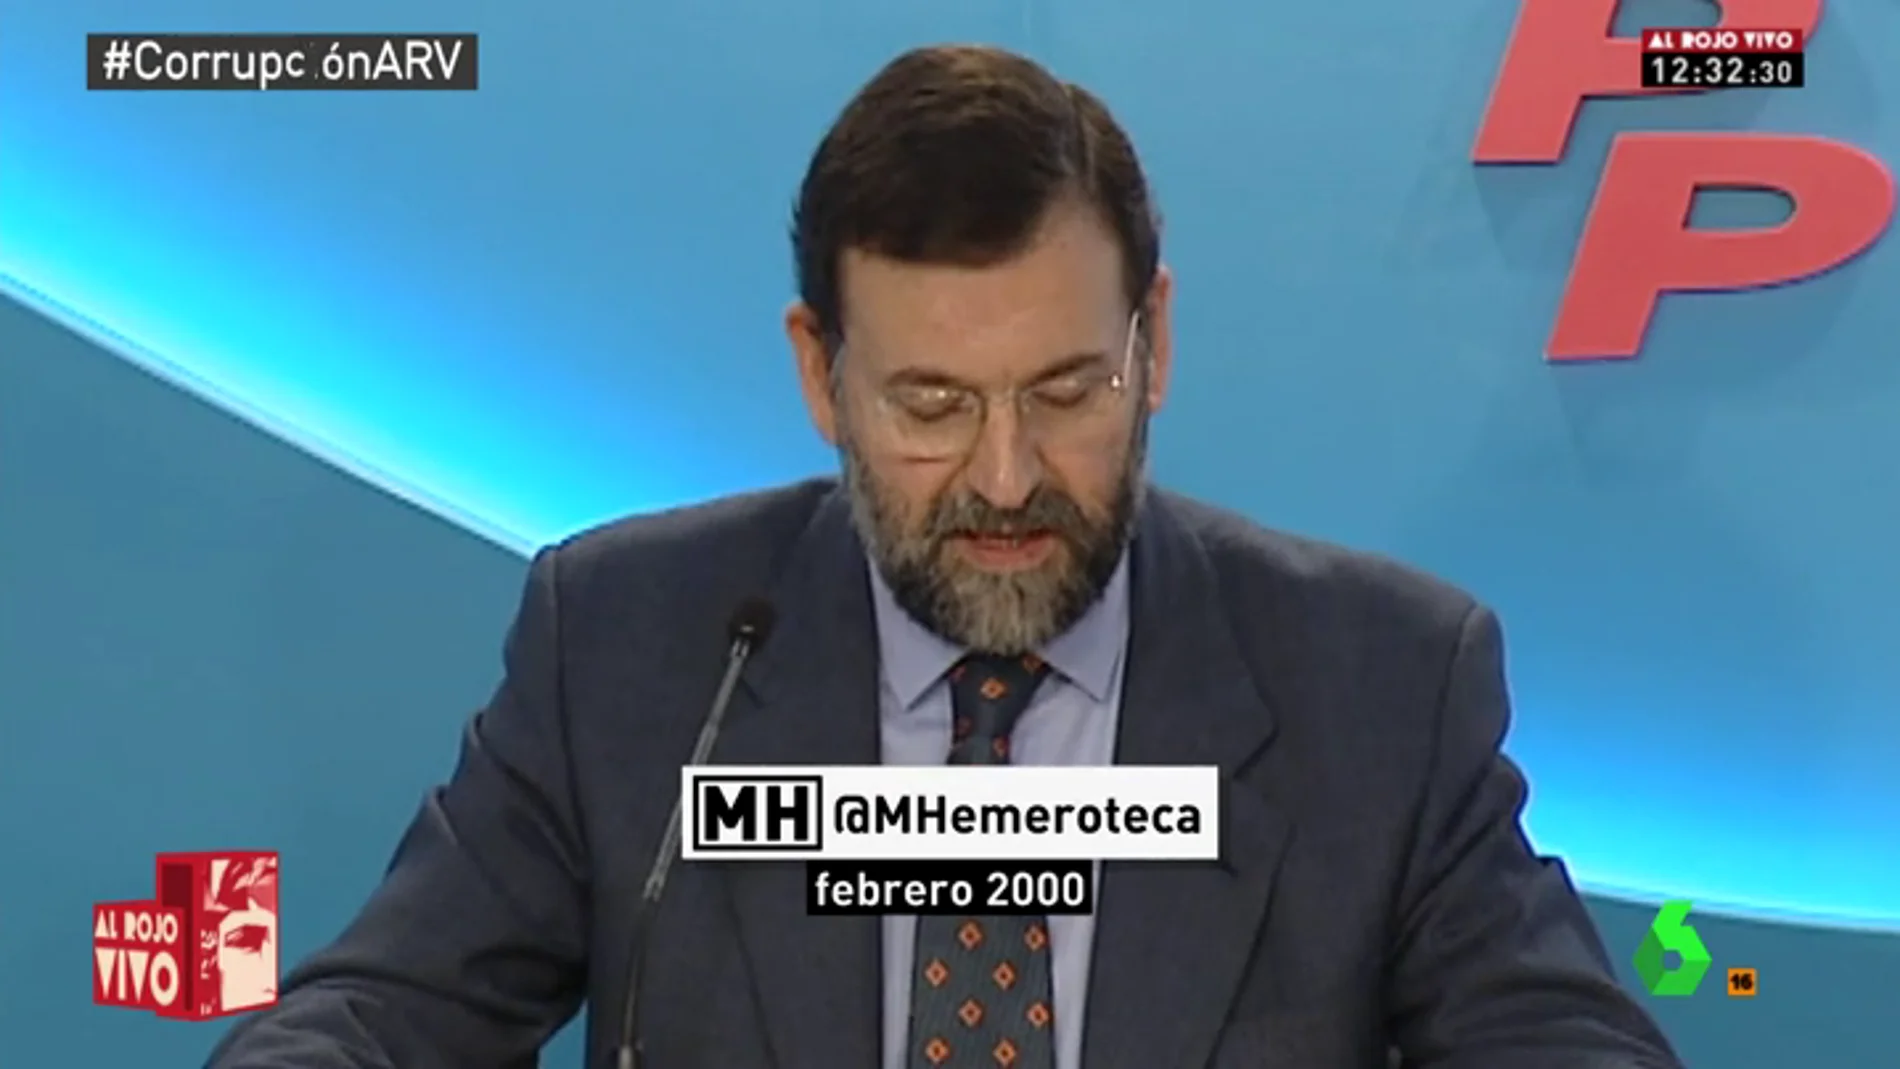 Así explicaba Mariano Rajoy la campaña del 2000 que el PP habría financiado de manera irregular